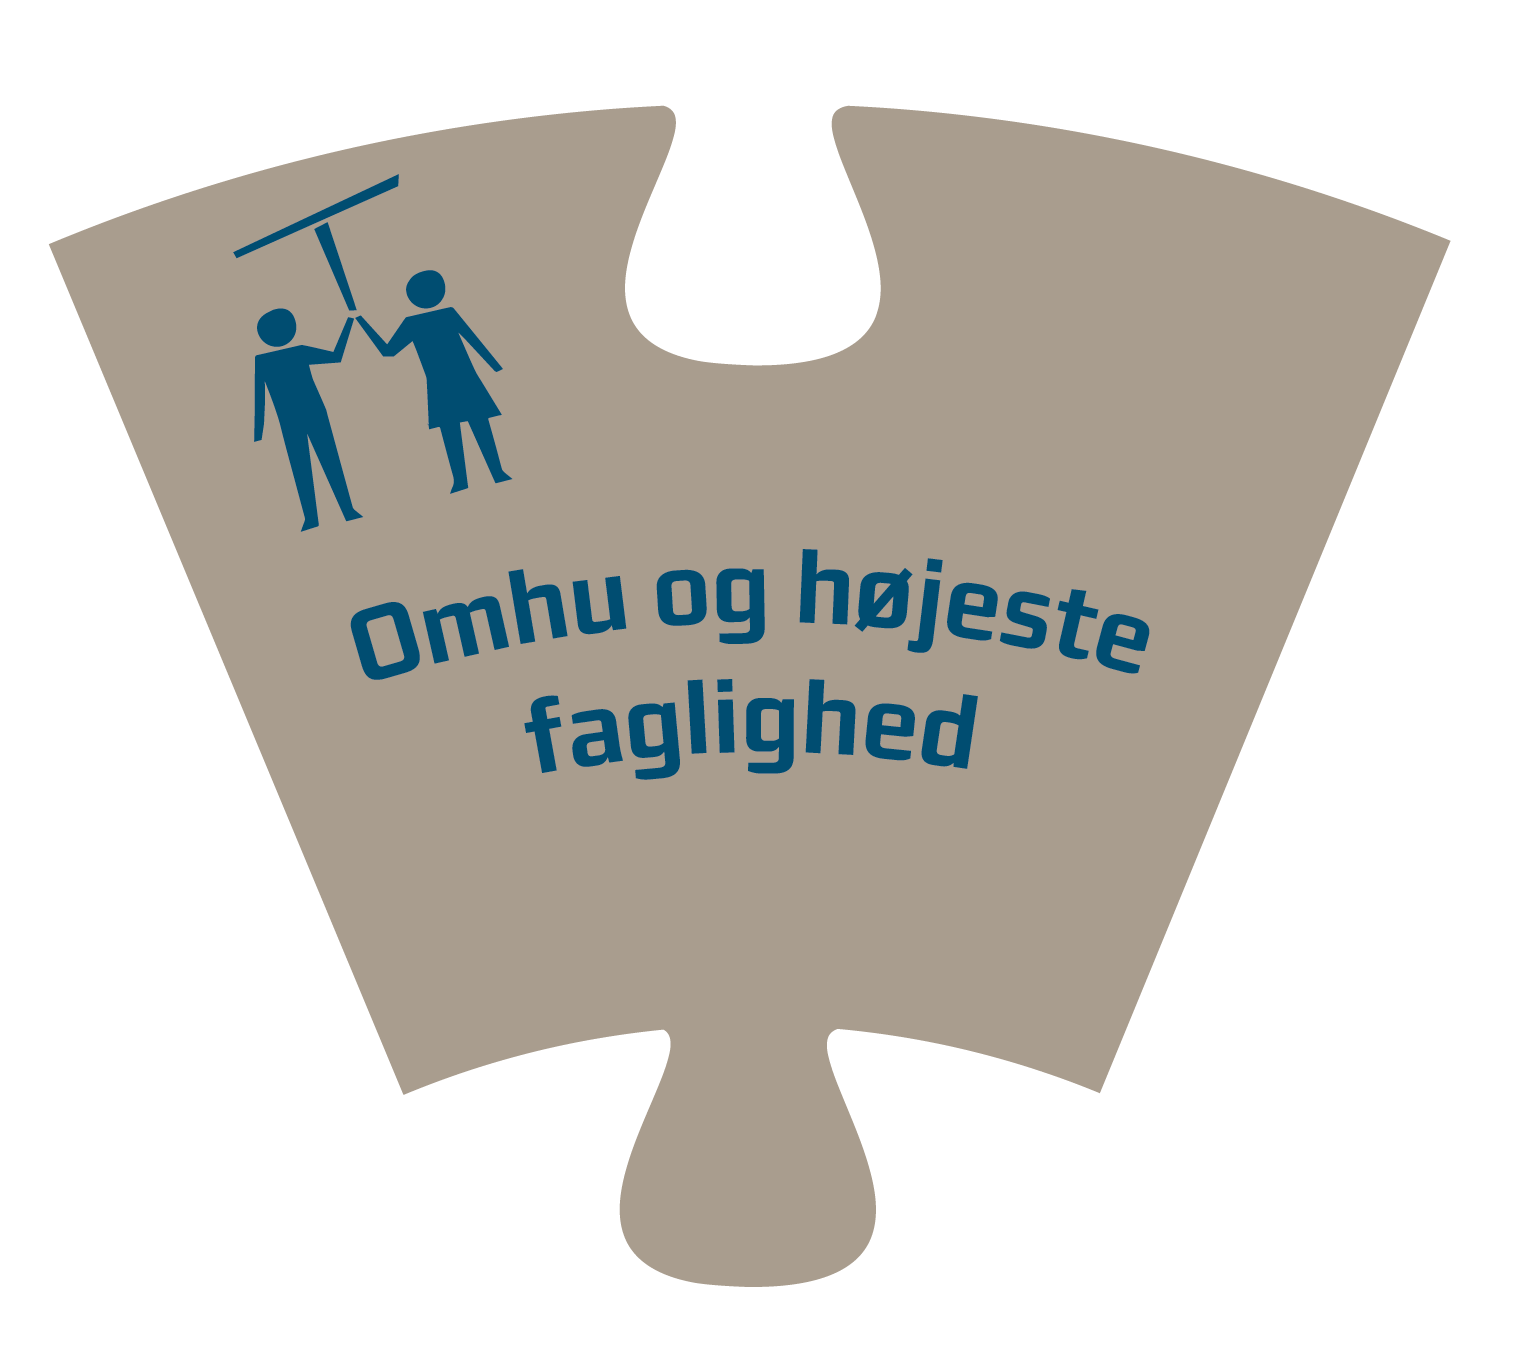 Puslespilsbrik med teksten "Omhu og højeste faglighed".